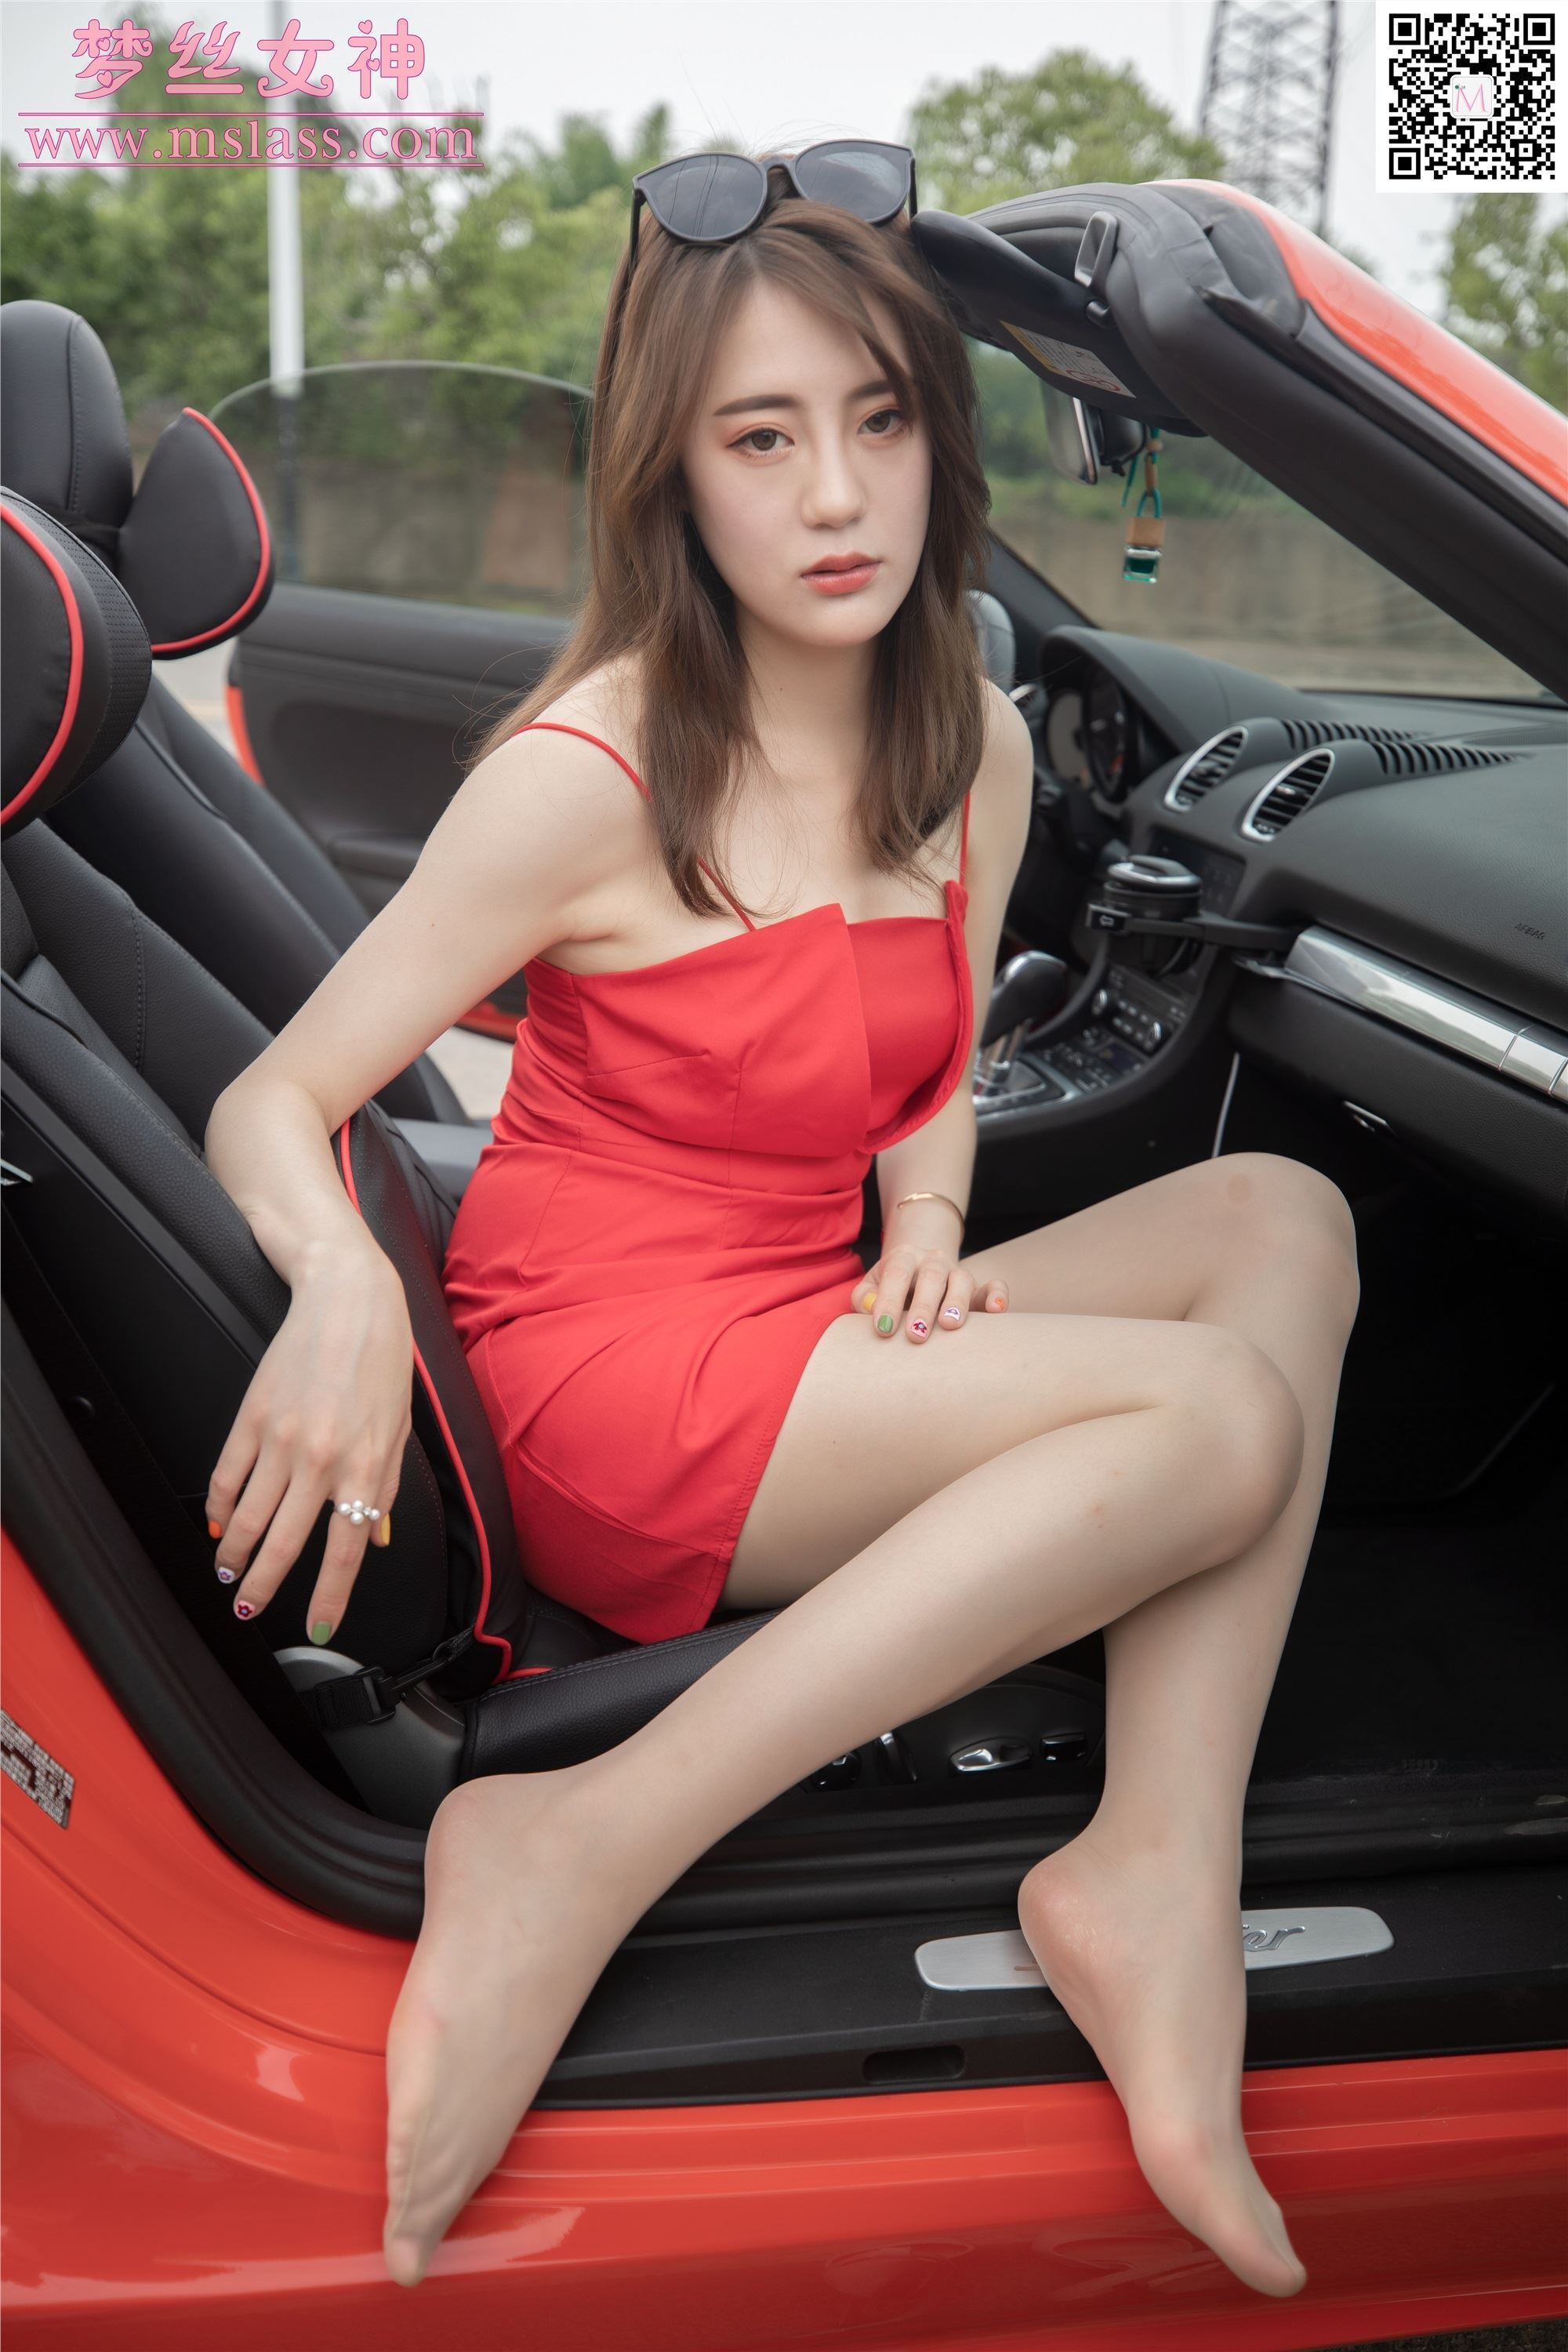 Mslass dream goddess October 21, 2019 Chen Yinger model goddess